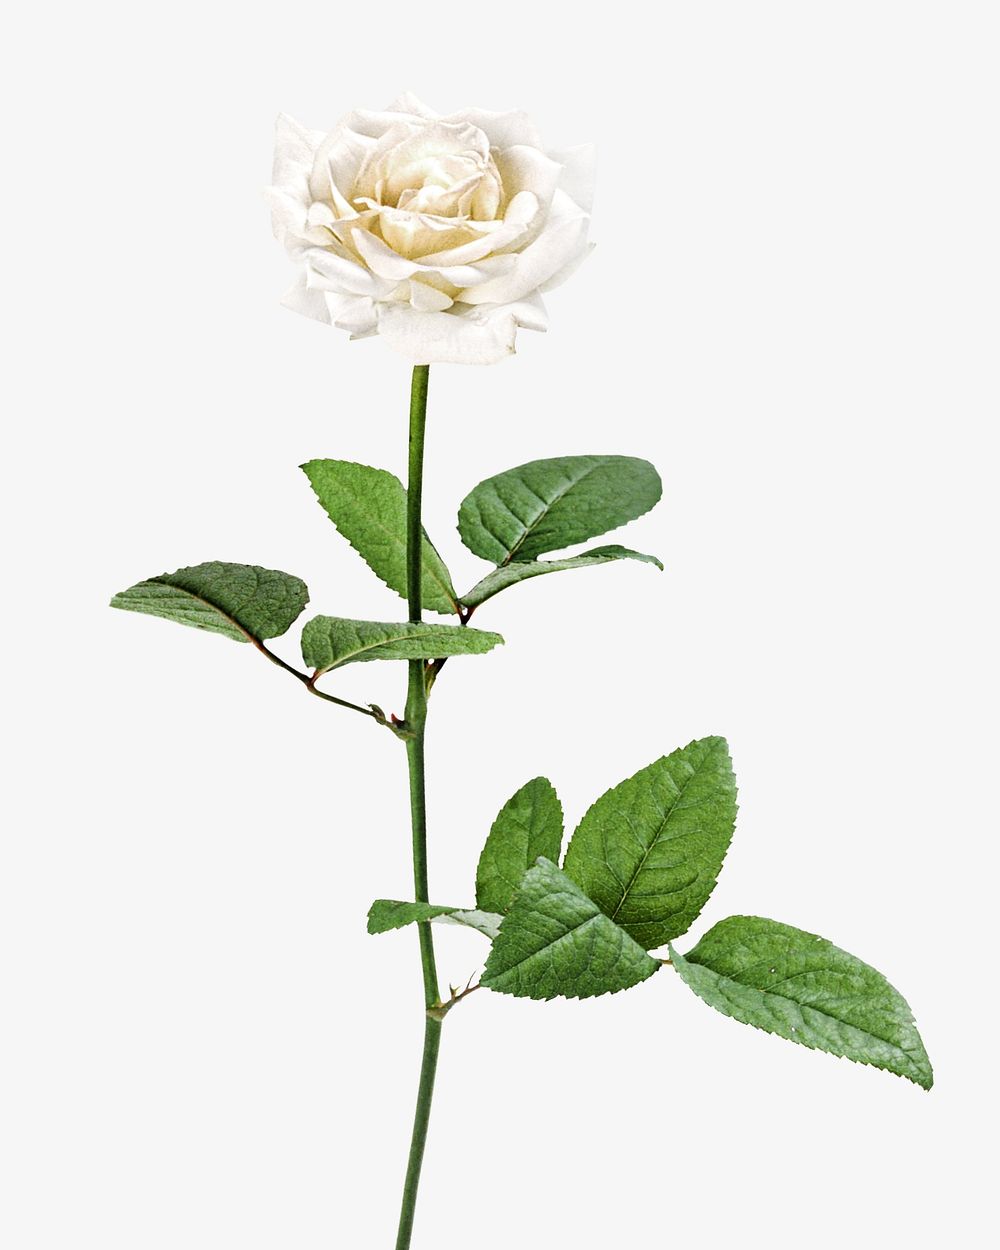 White rose isolated image on white